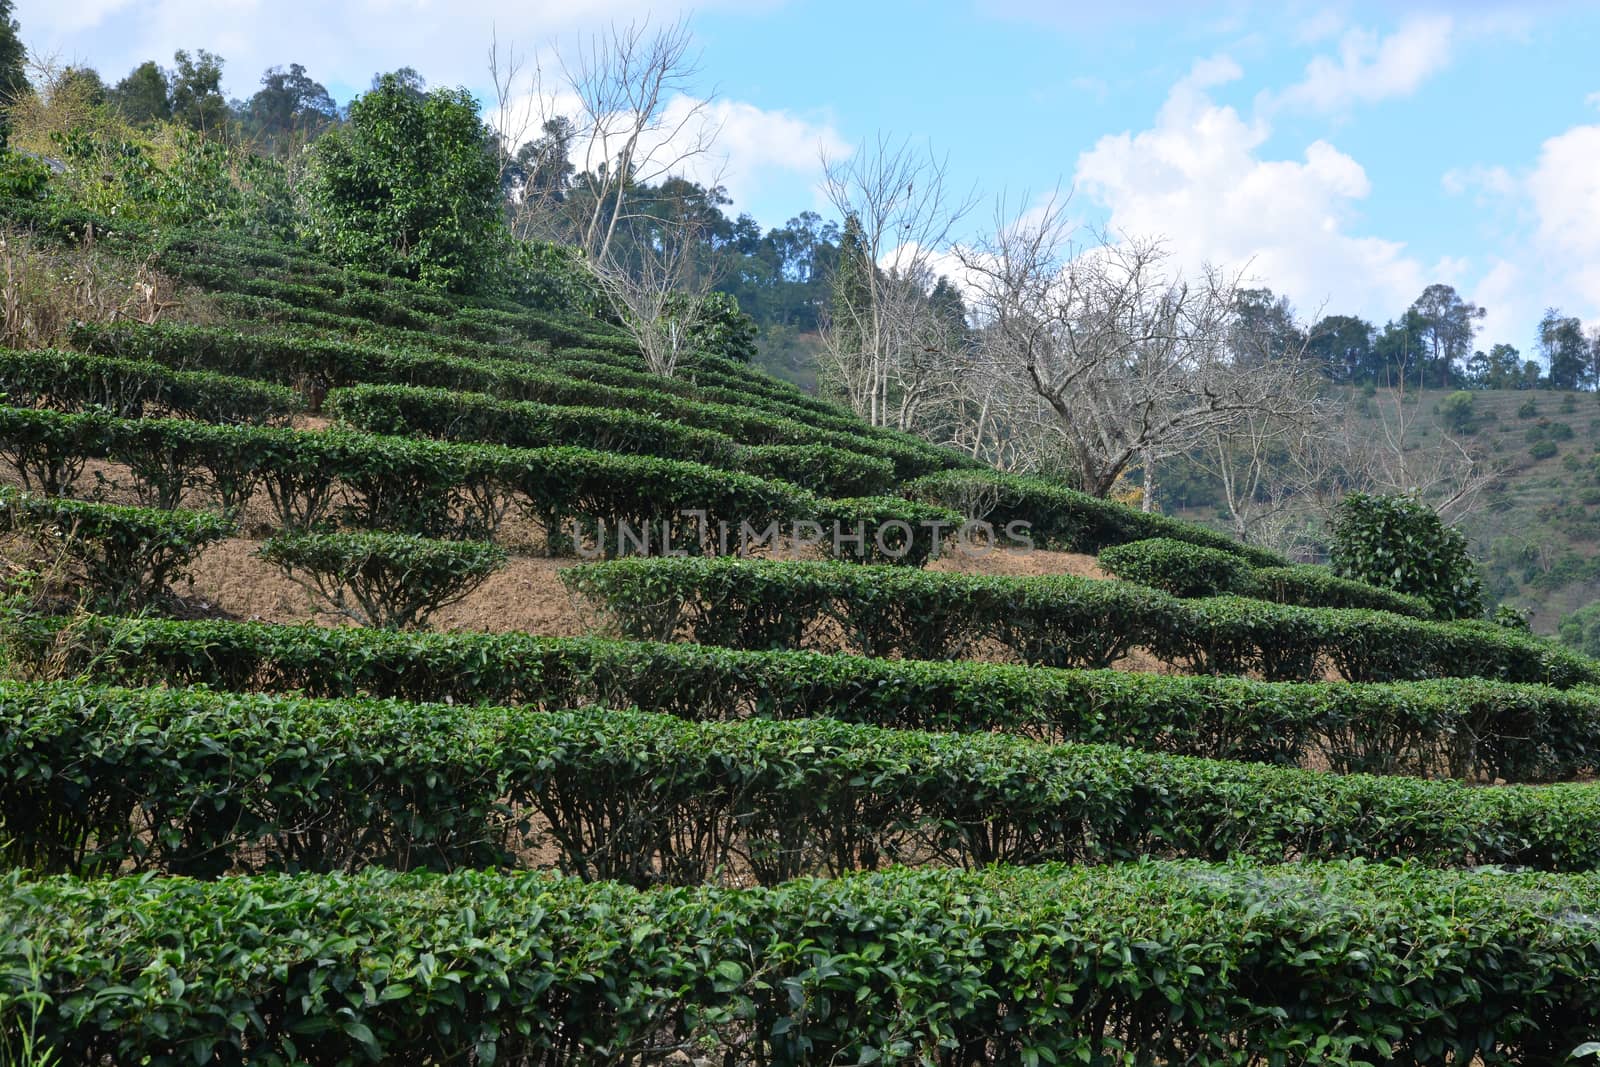 Tea plantation on hill